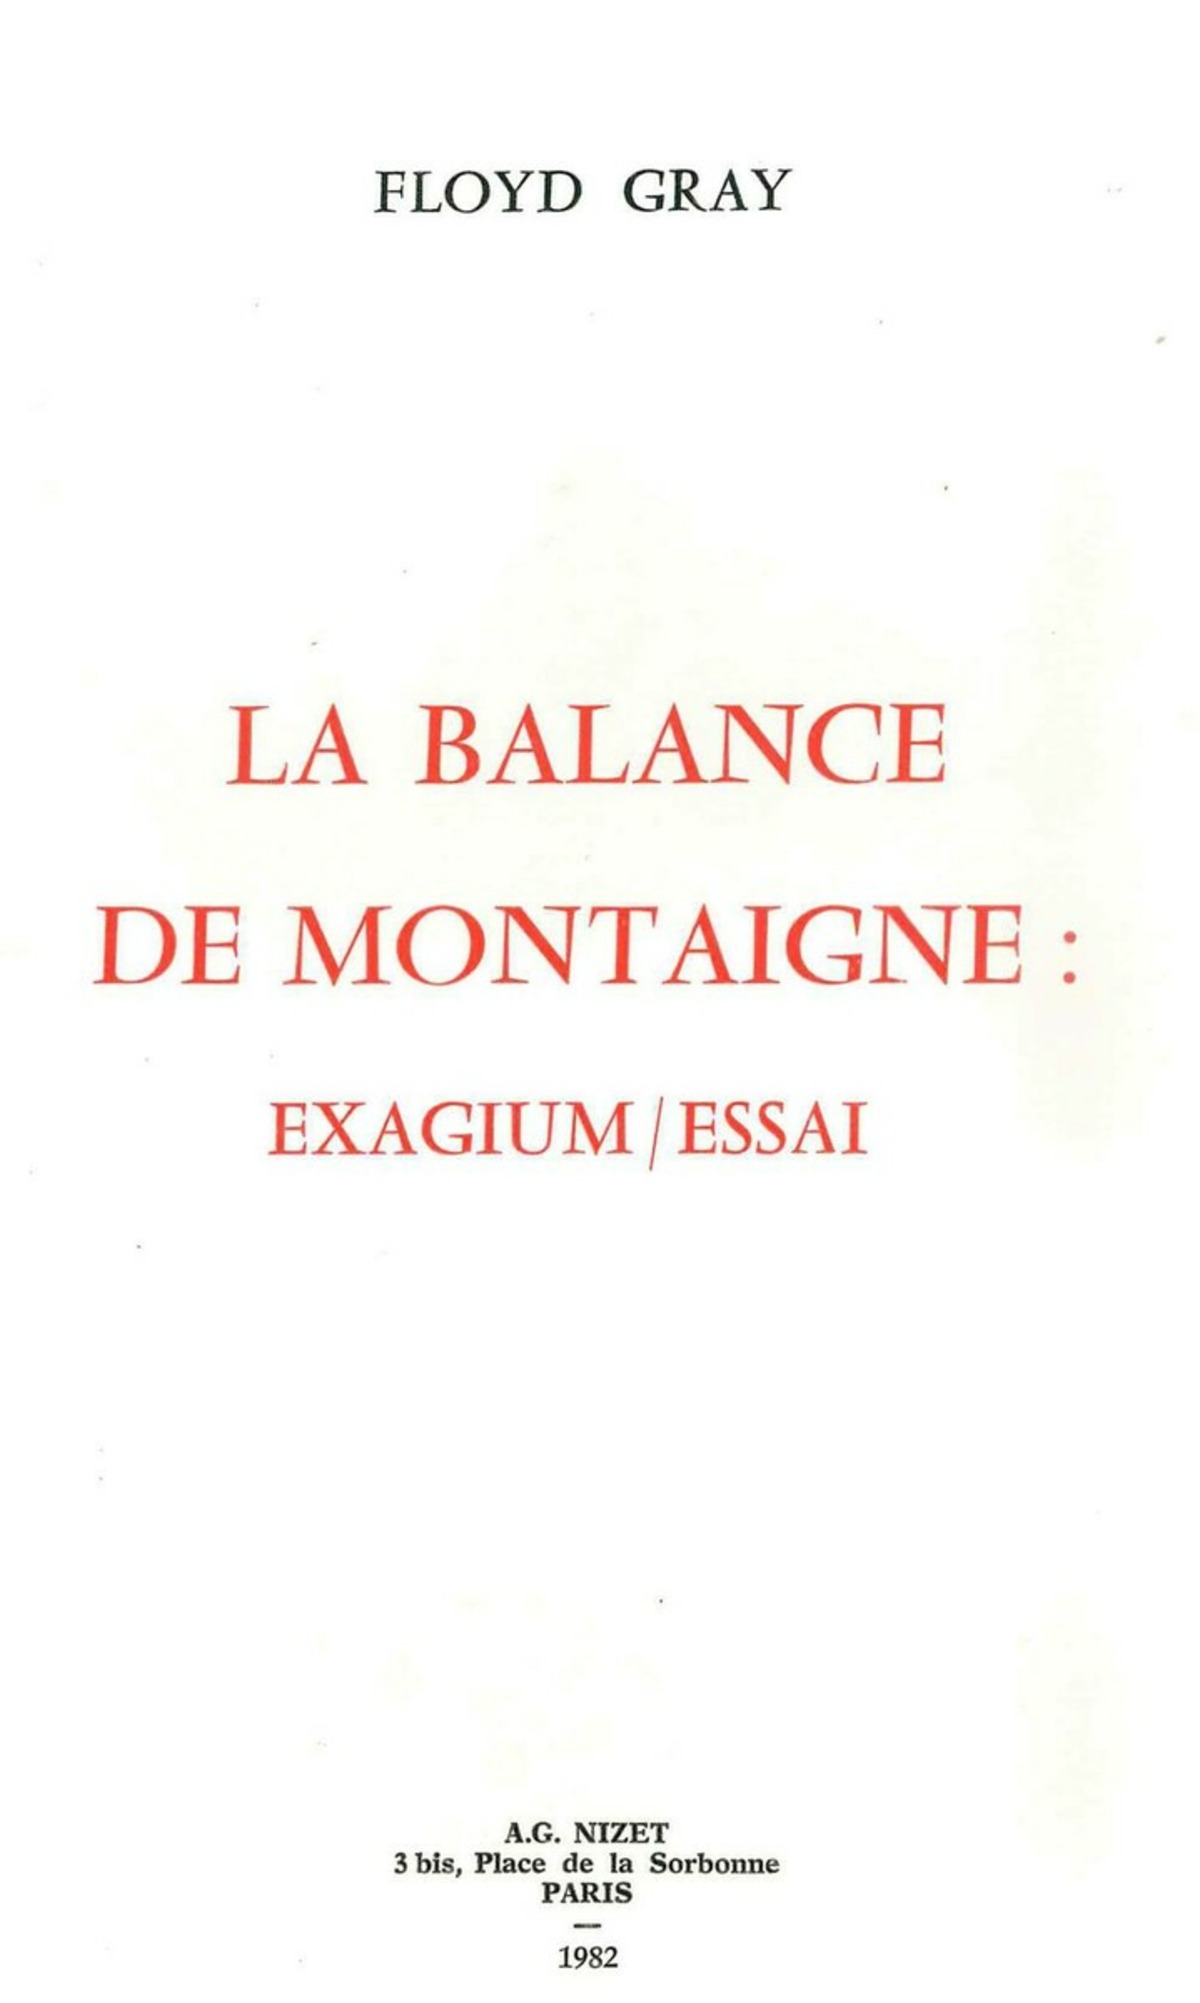 La Balance de Montaigne : exagium/essai